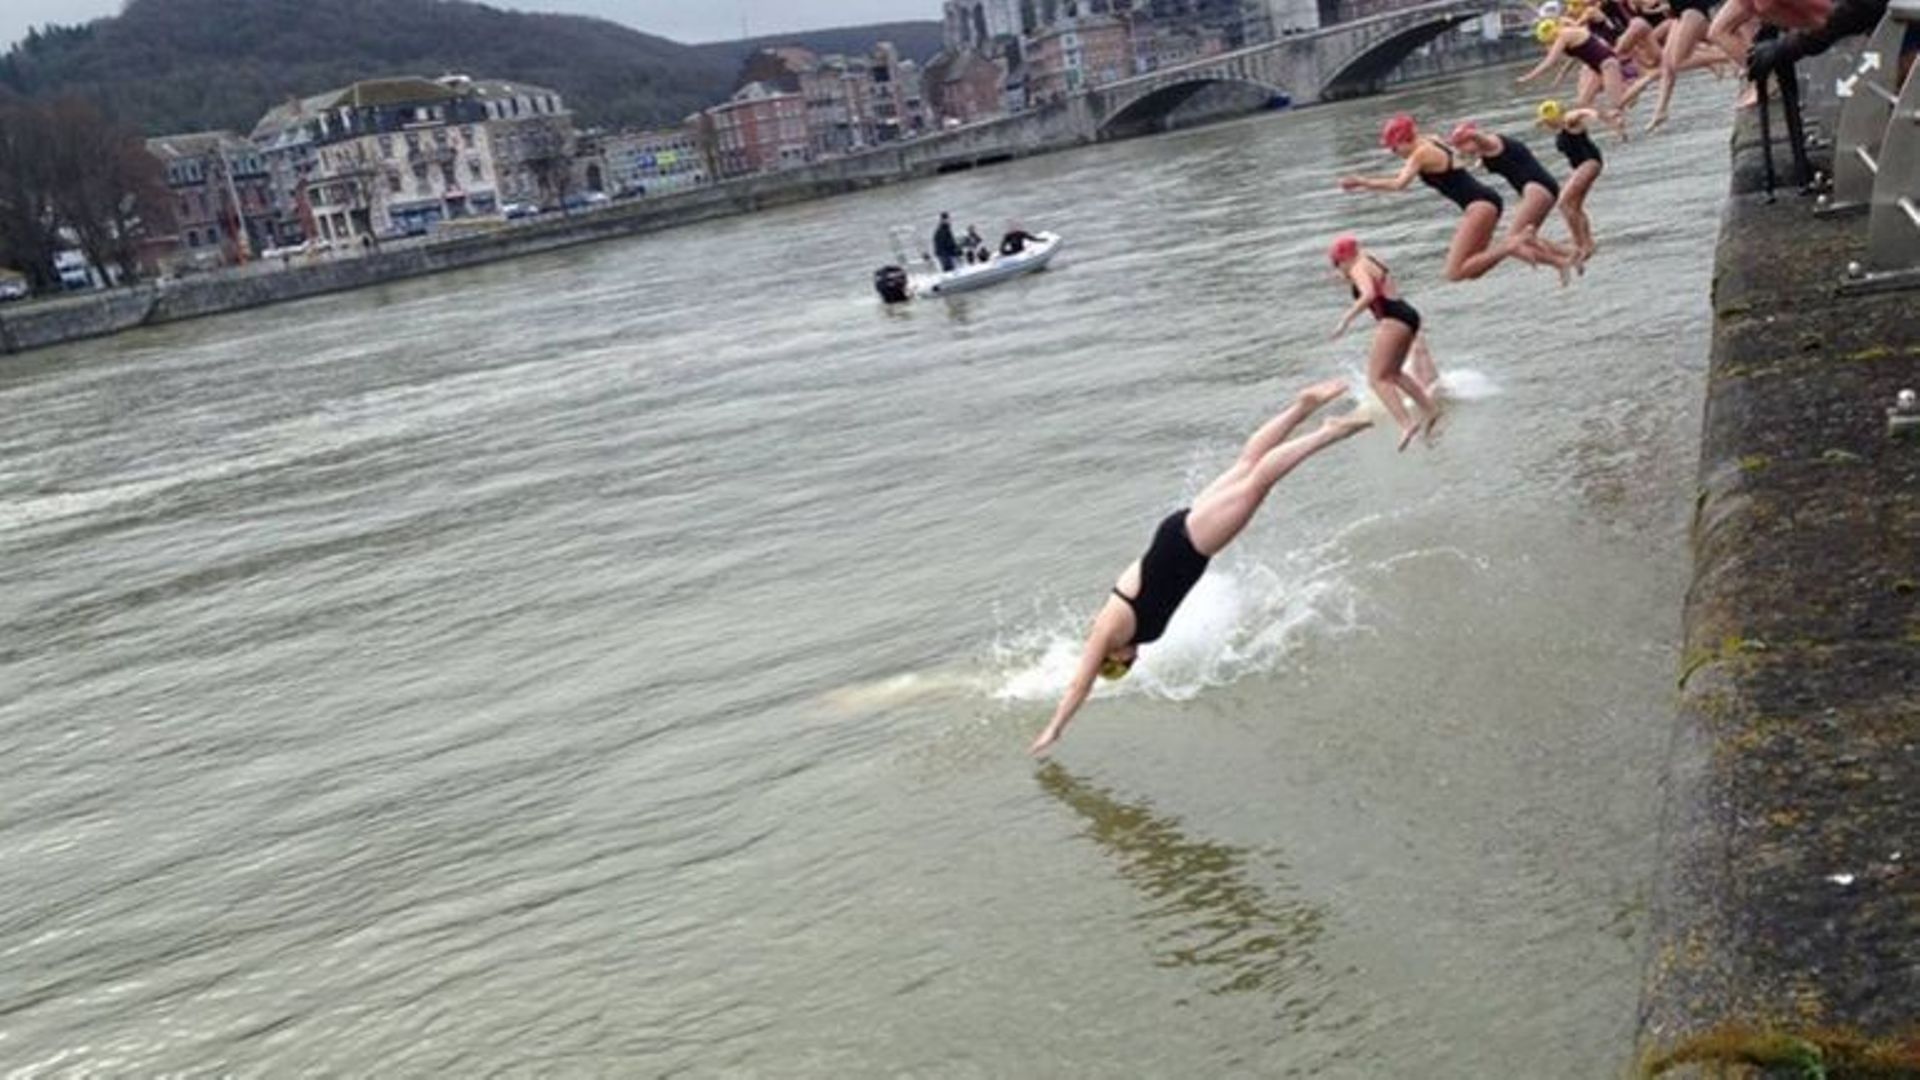 Les nageurs du club "Cool Huy" nagent dans la Meuse été comme hiver